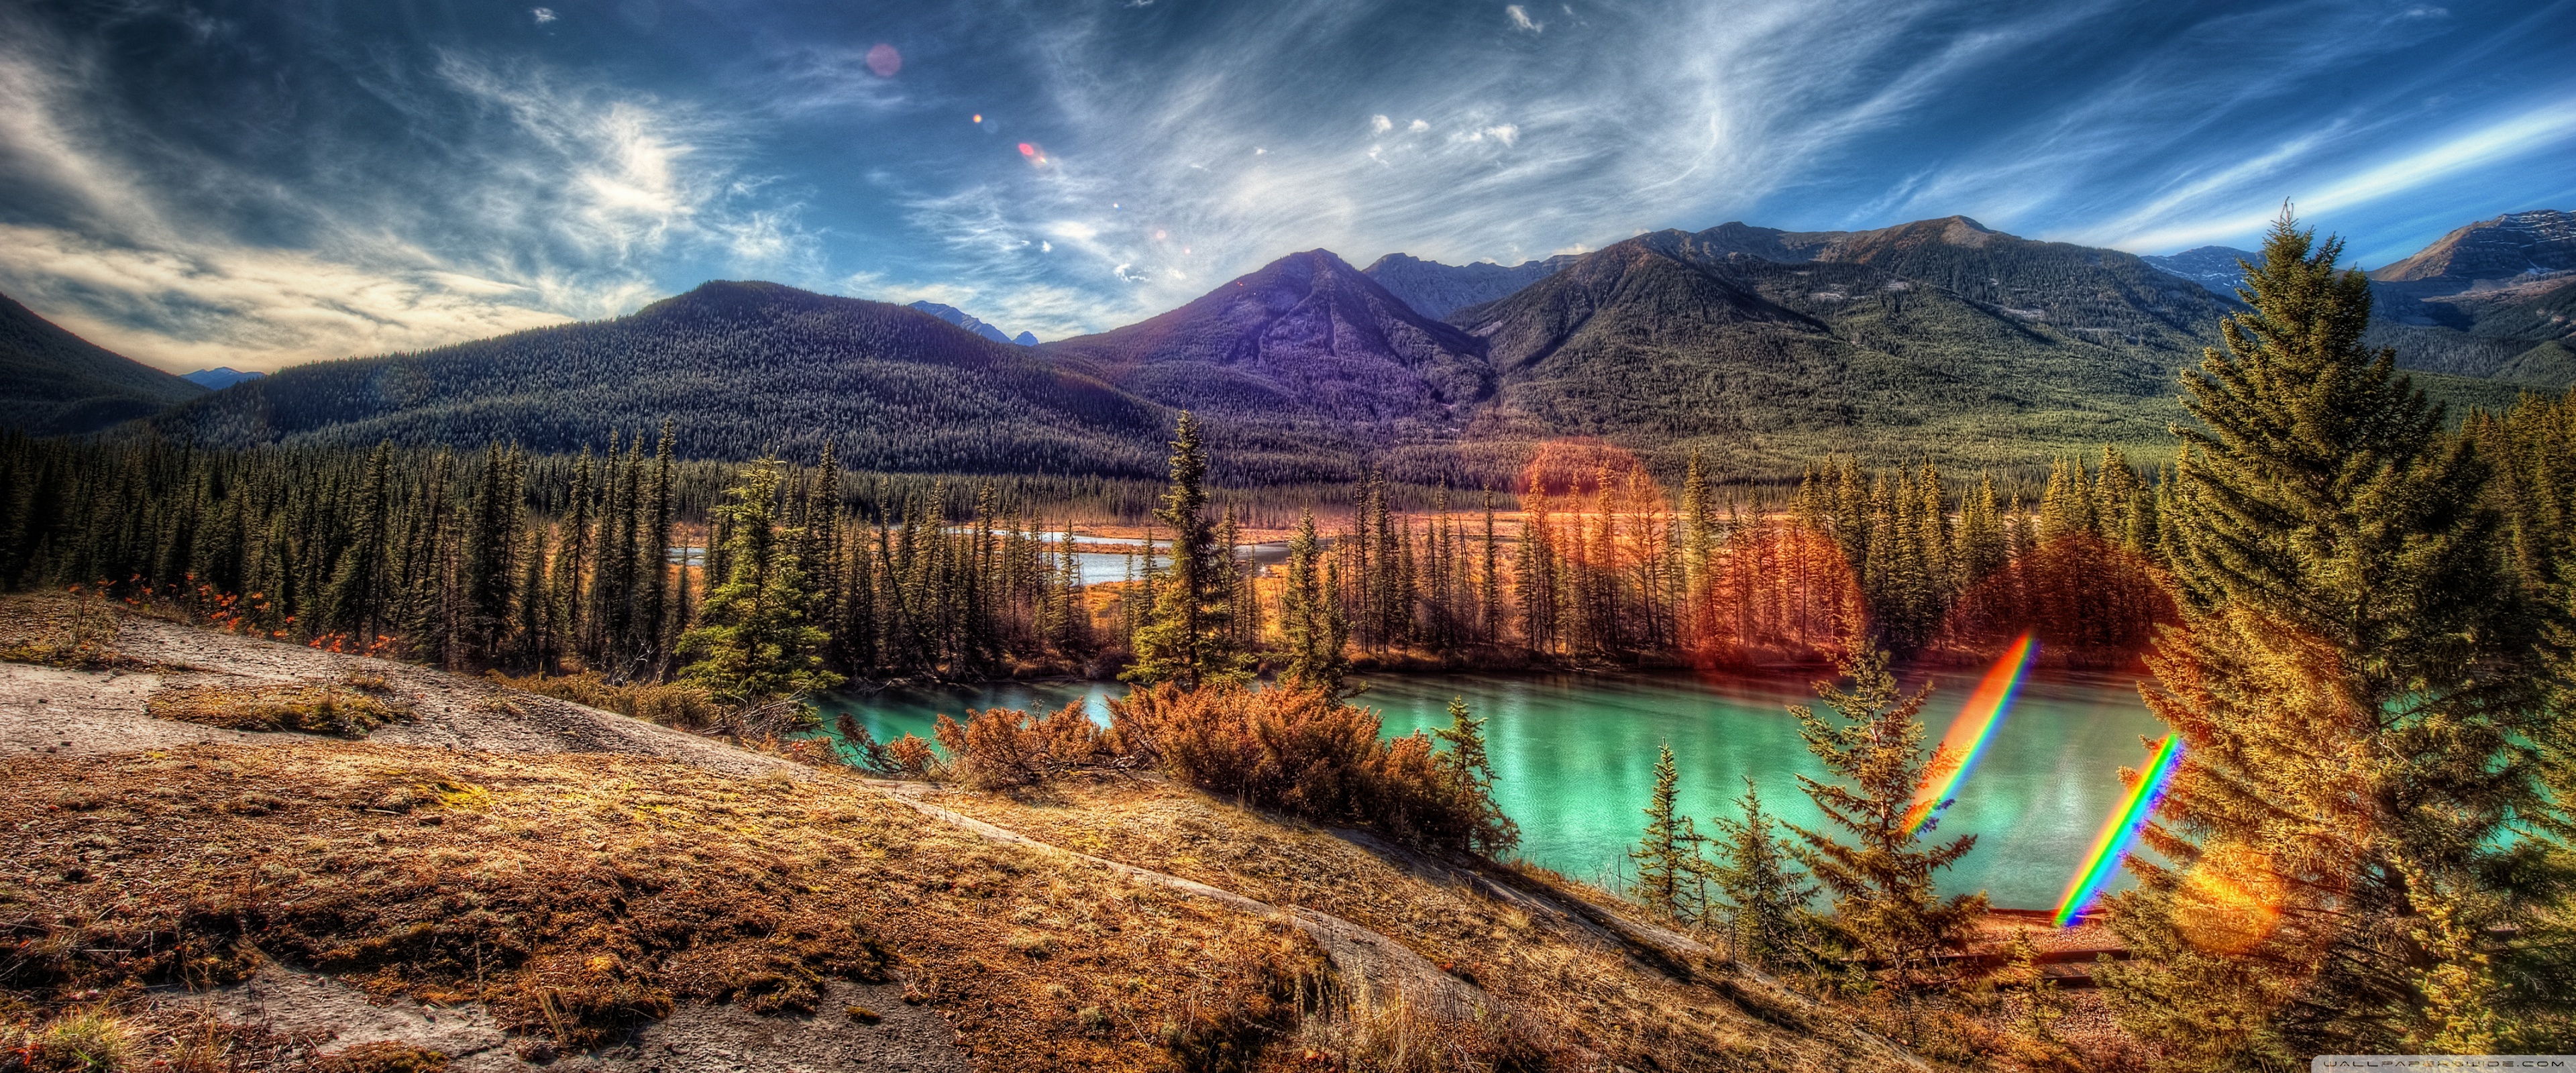 Banff National Park - HD Wallpaper 